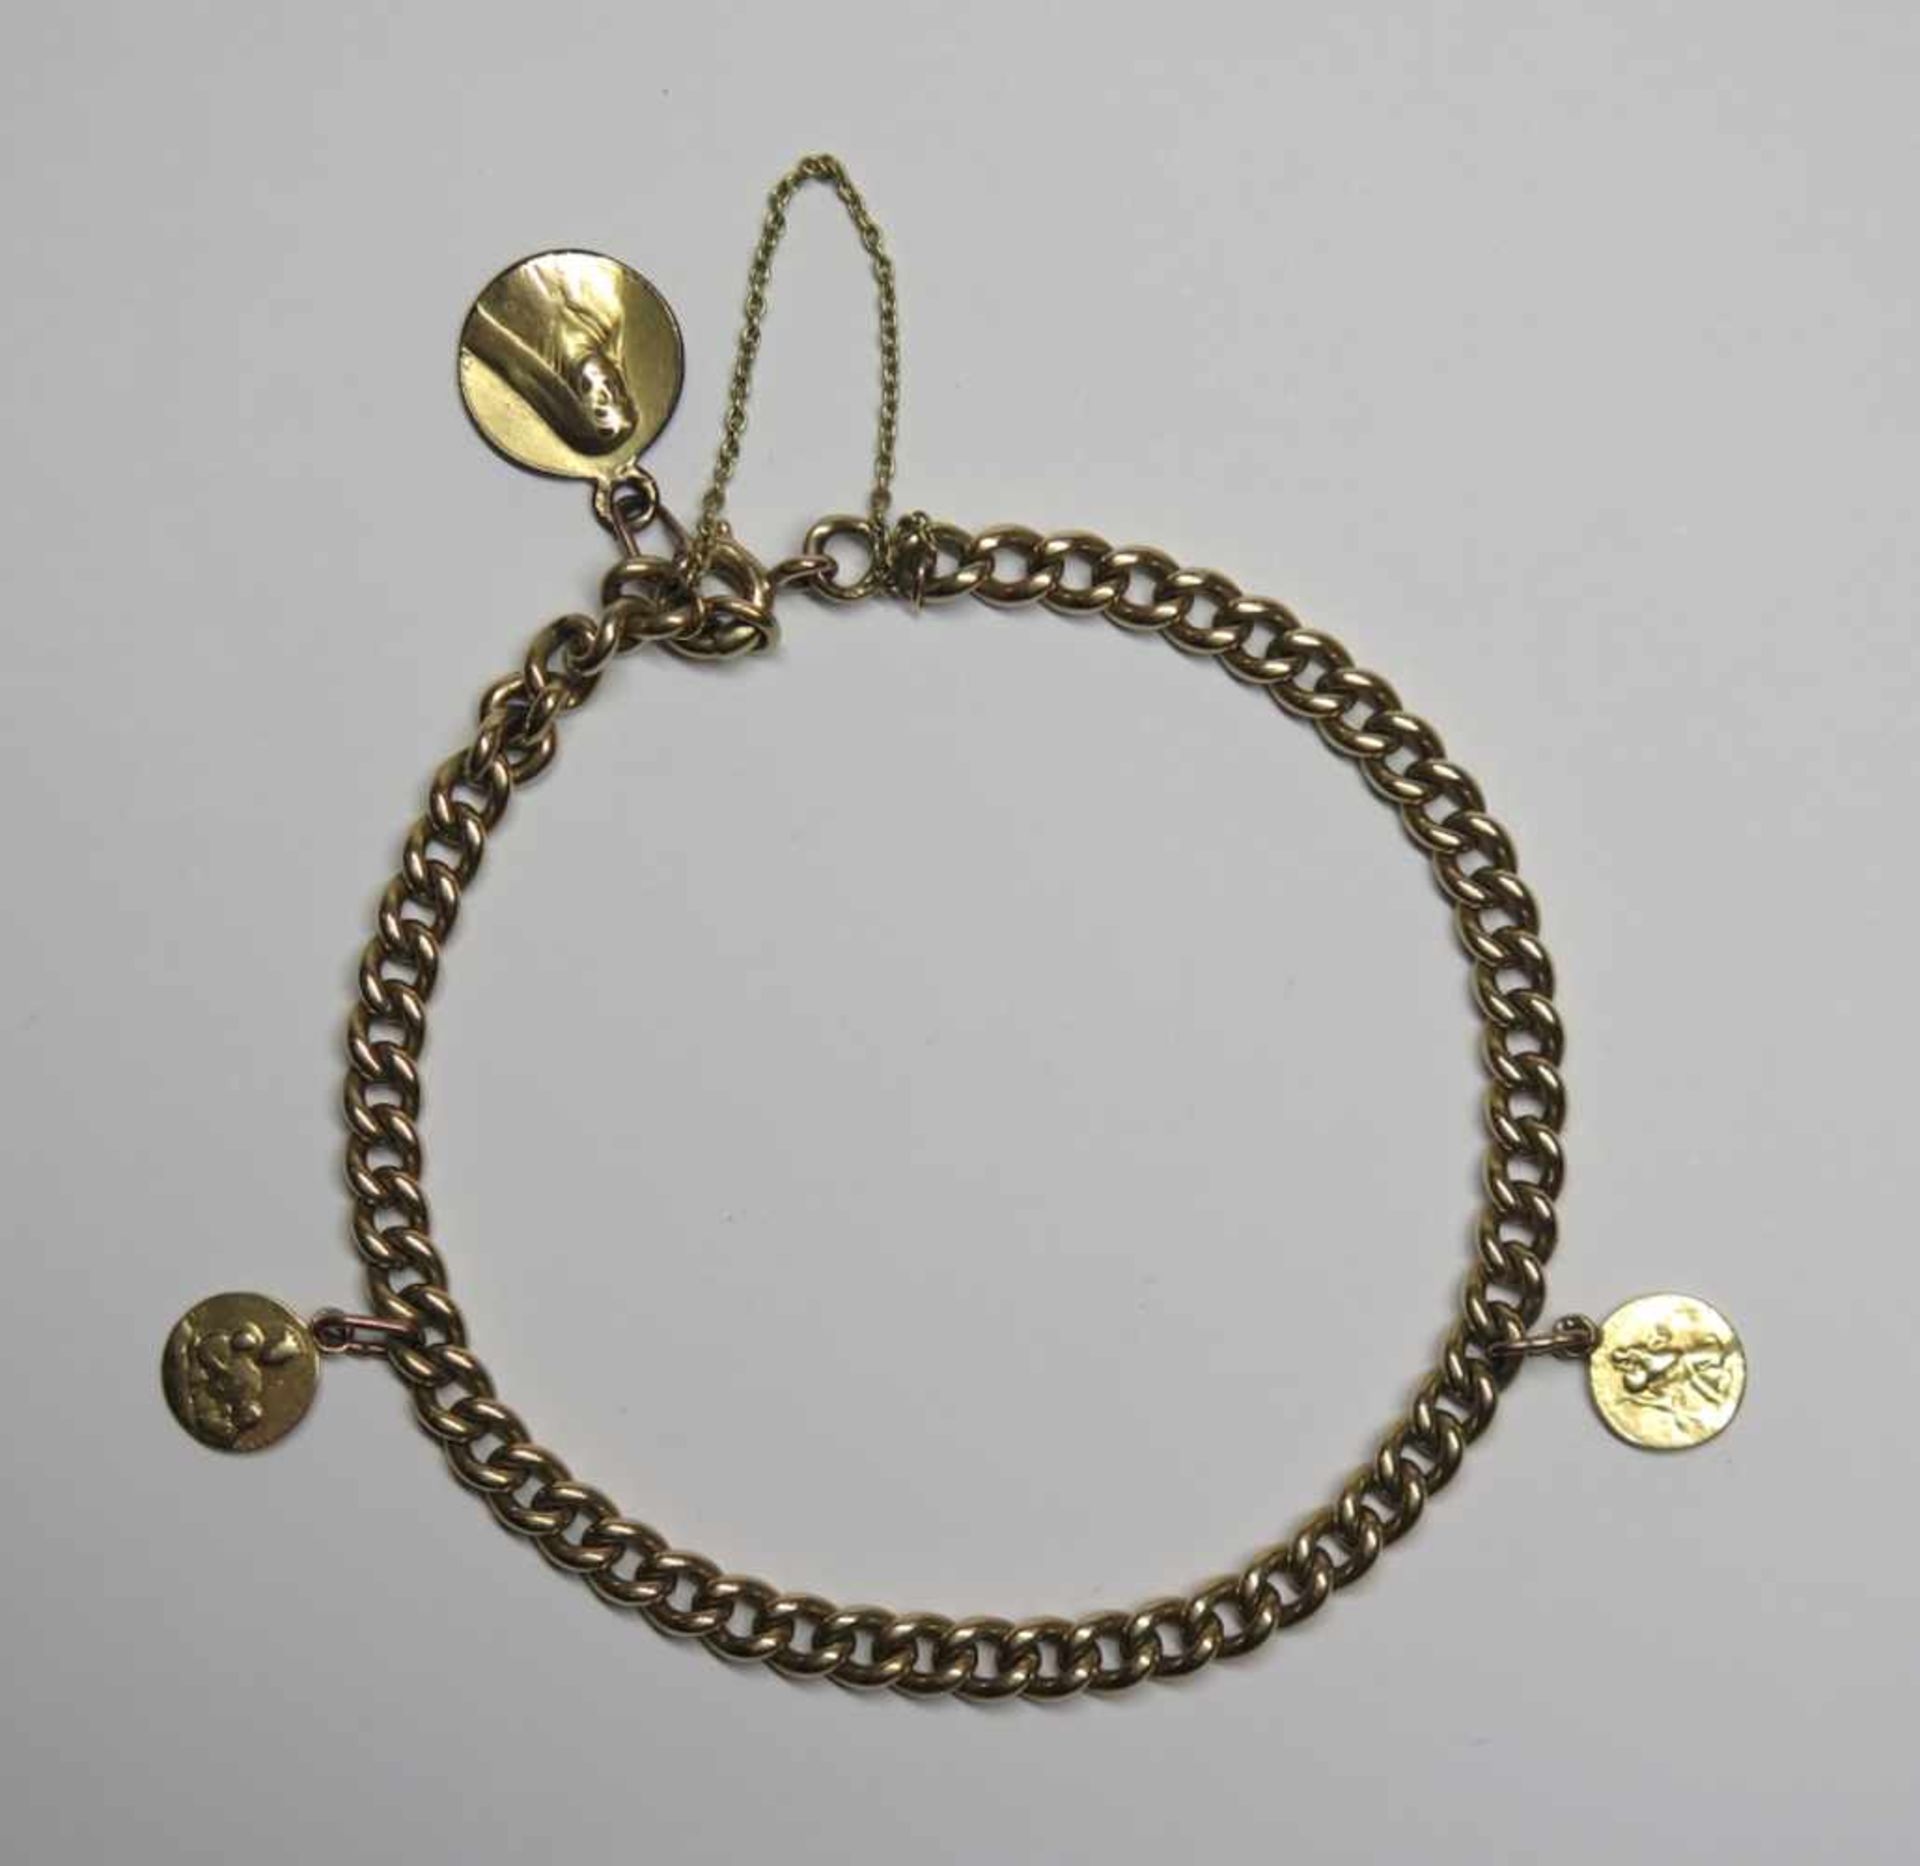 Bracelet et breloques, anciens.(long. env. 20.5 cm, poids total: env. 18.4 g). En or jaune 750 (sauf